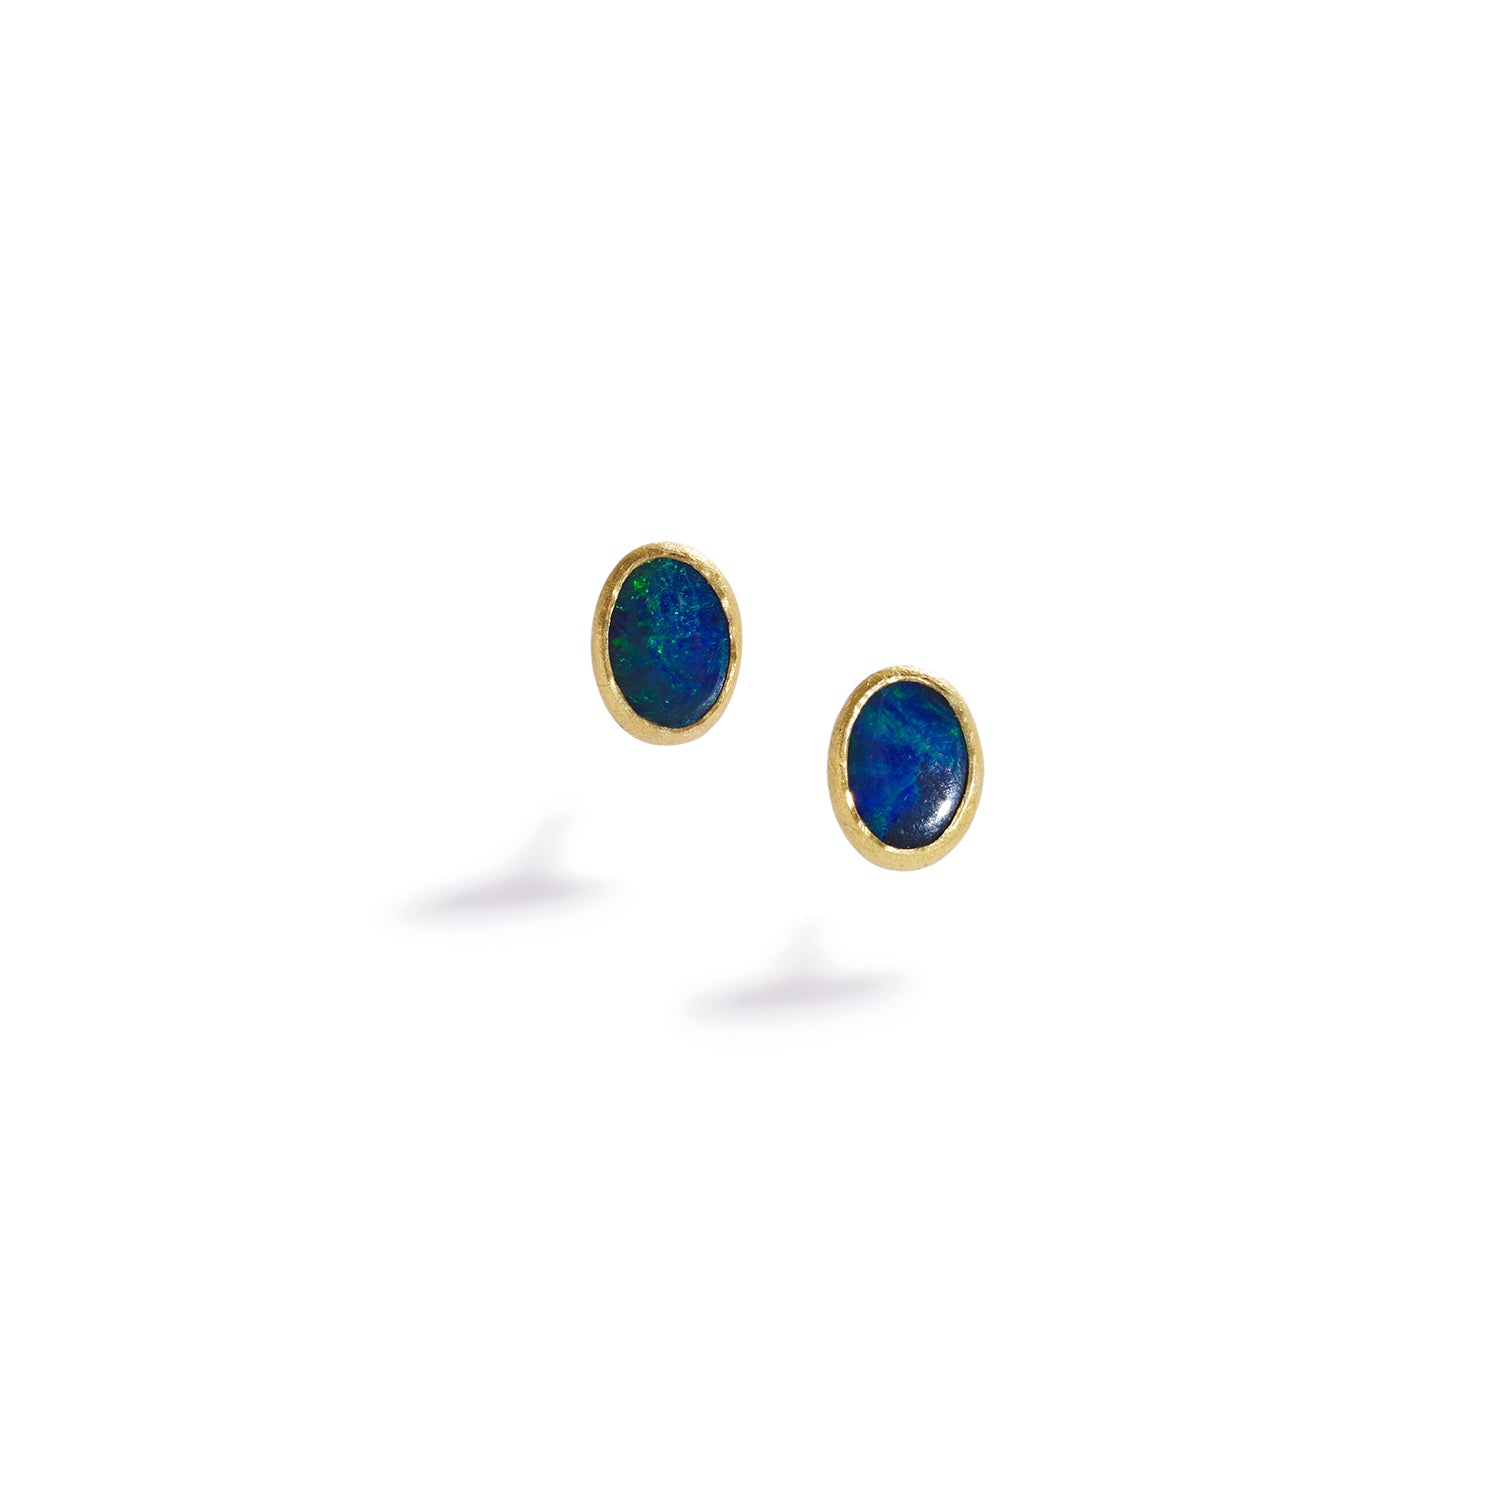 Small Australian Opal Earrings